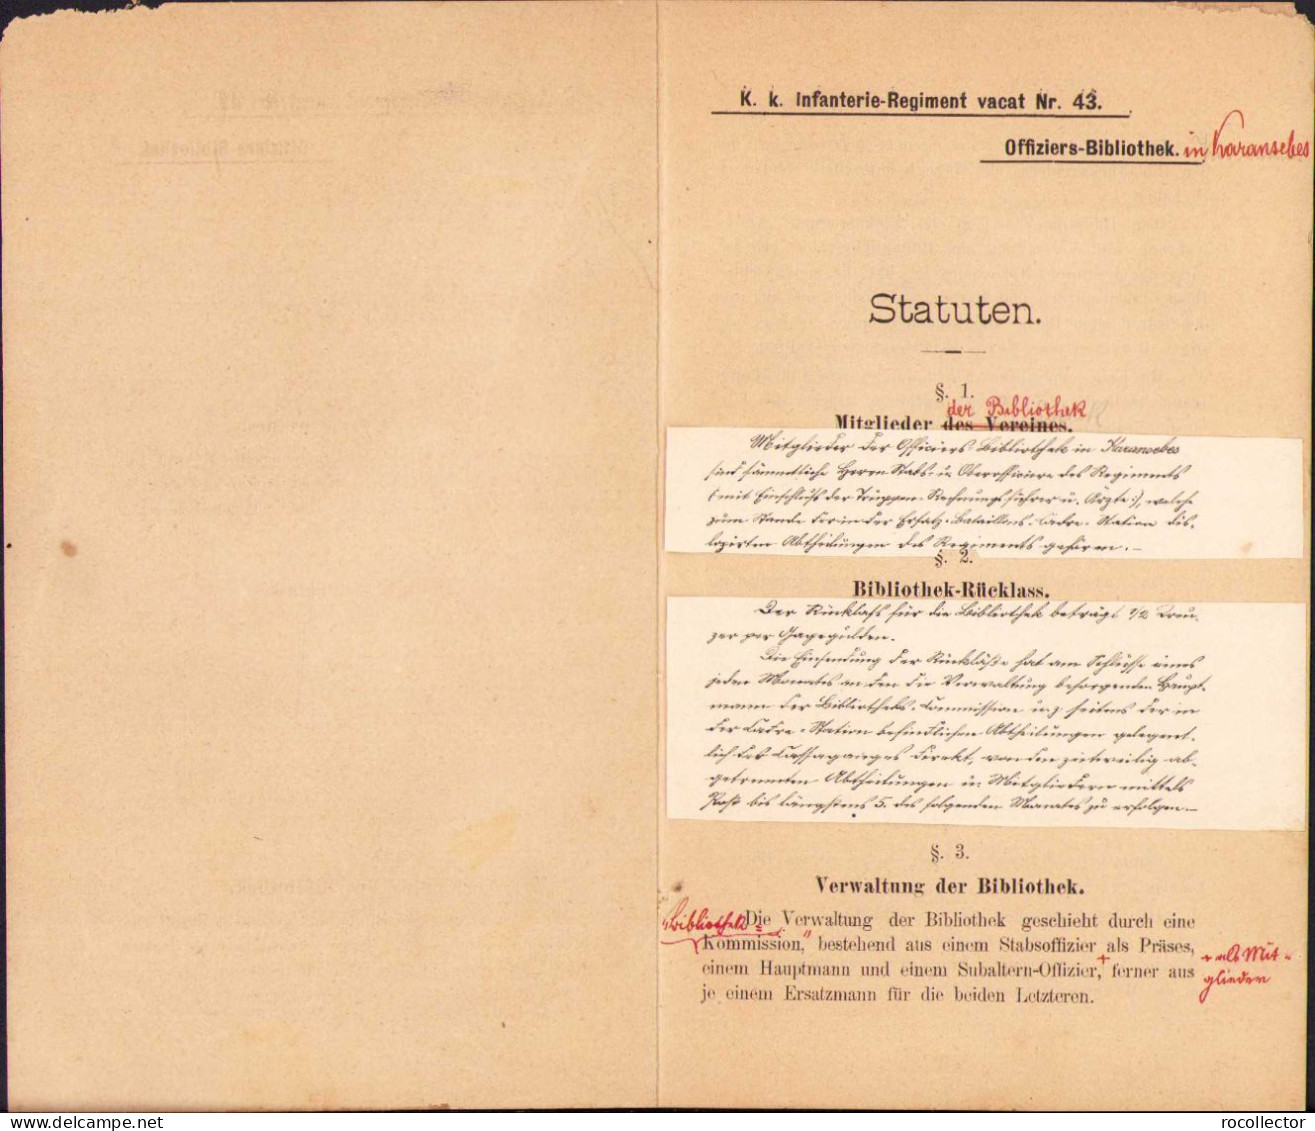 Statuten Für Die Offiziers-Bibliotek Des Infanterie-Regiments Nr. 43 Karansebes 1887 C1061 - Old Books